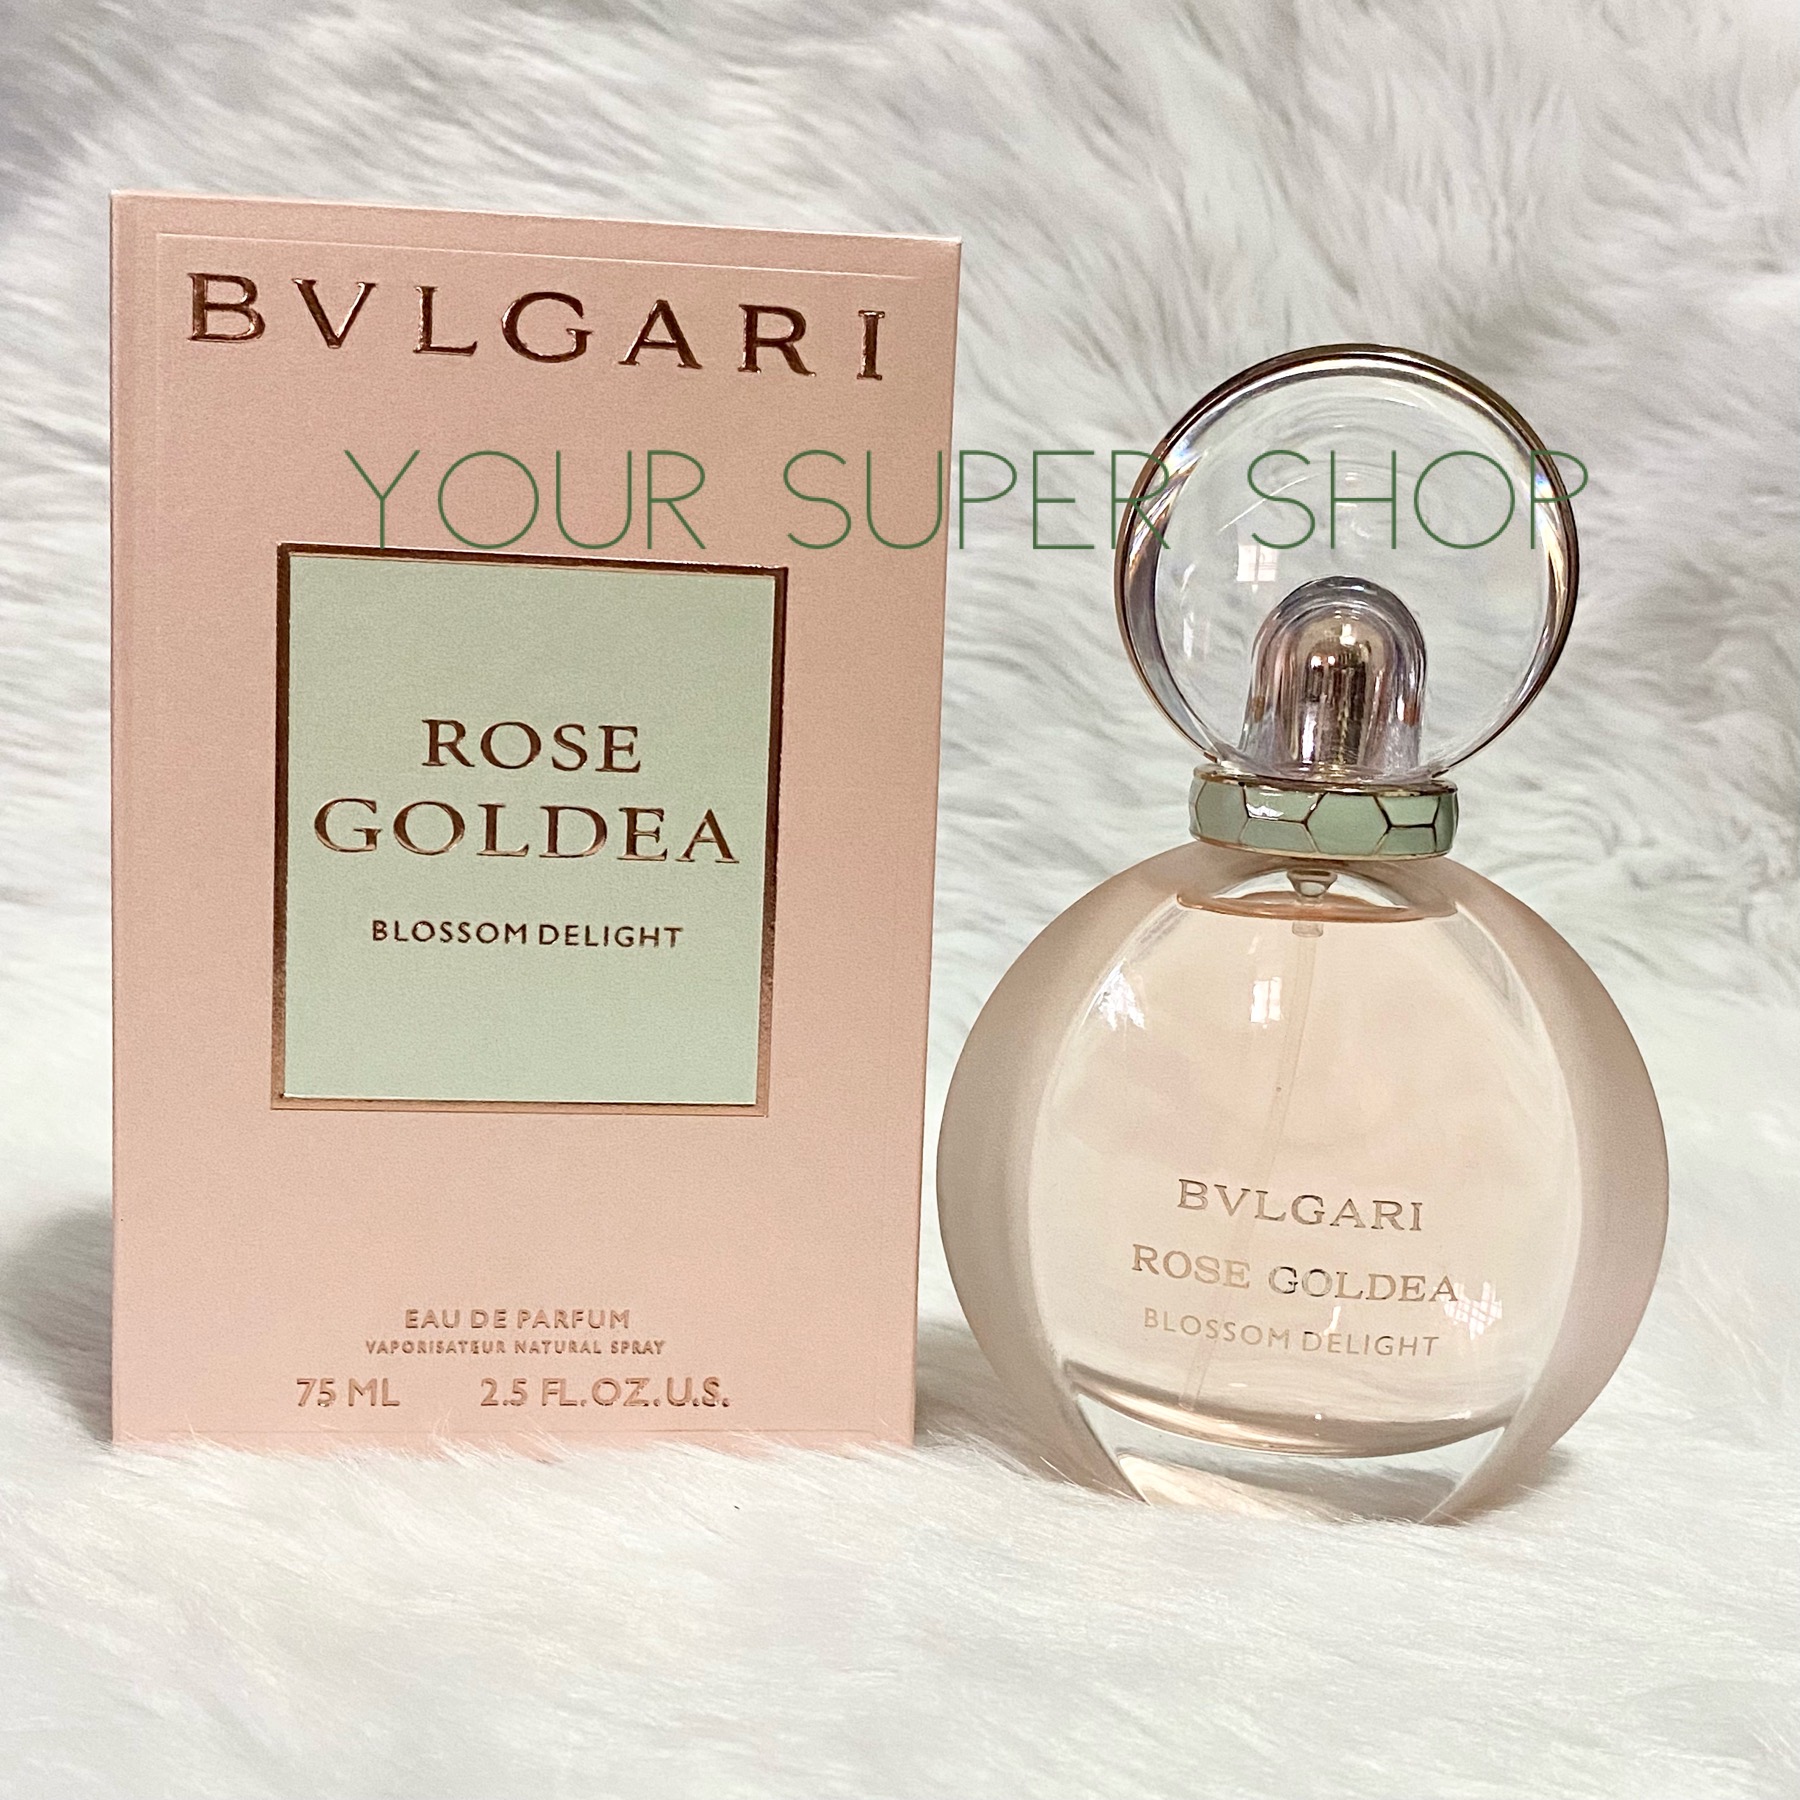 Bulgari Rose Goldea Blossom Delight 75ML | Lazada PH